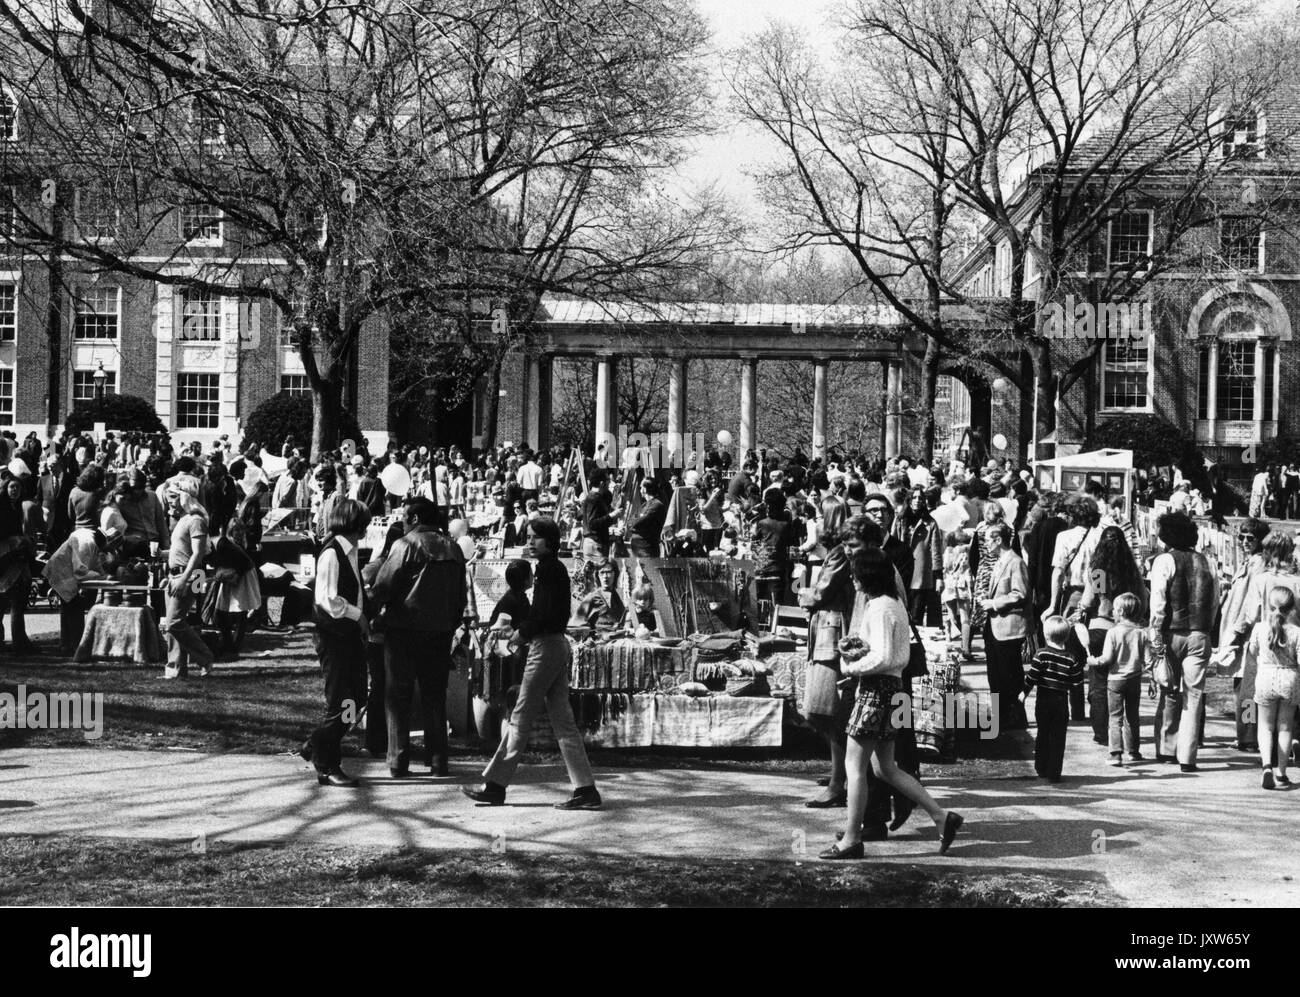 Studenten zu Fuß in einer Gruppe an der Frühjahrsmesse, ein Spring Carnival, Draußen, Anbieter Zelte und einer großen Masse im Hintergrund, an der Johns Hopkins University, 1972. Stockfoto